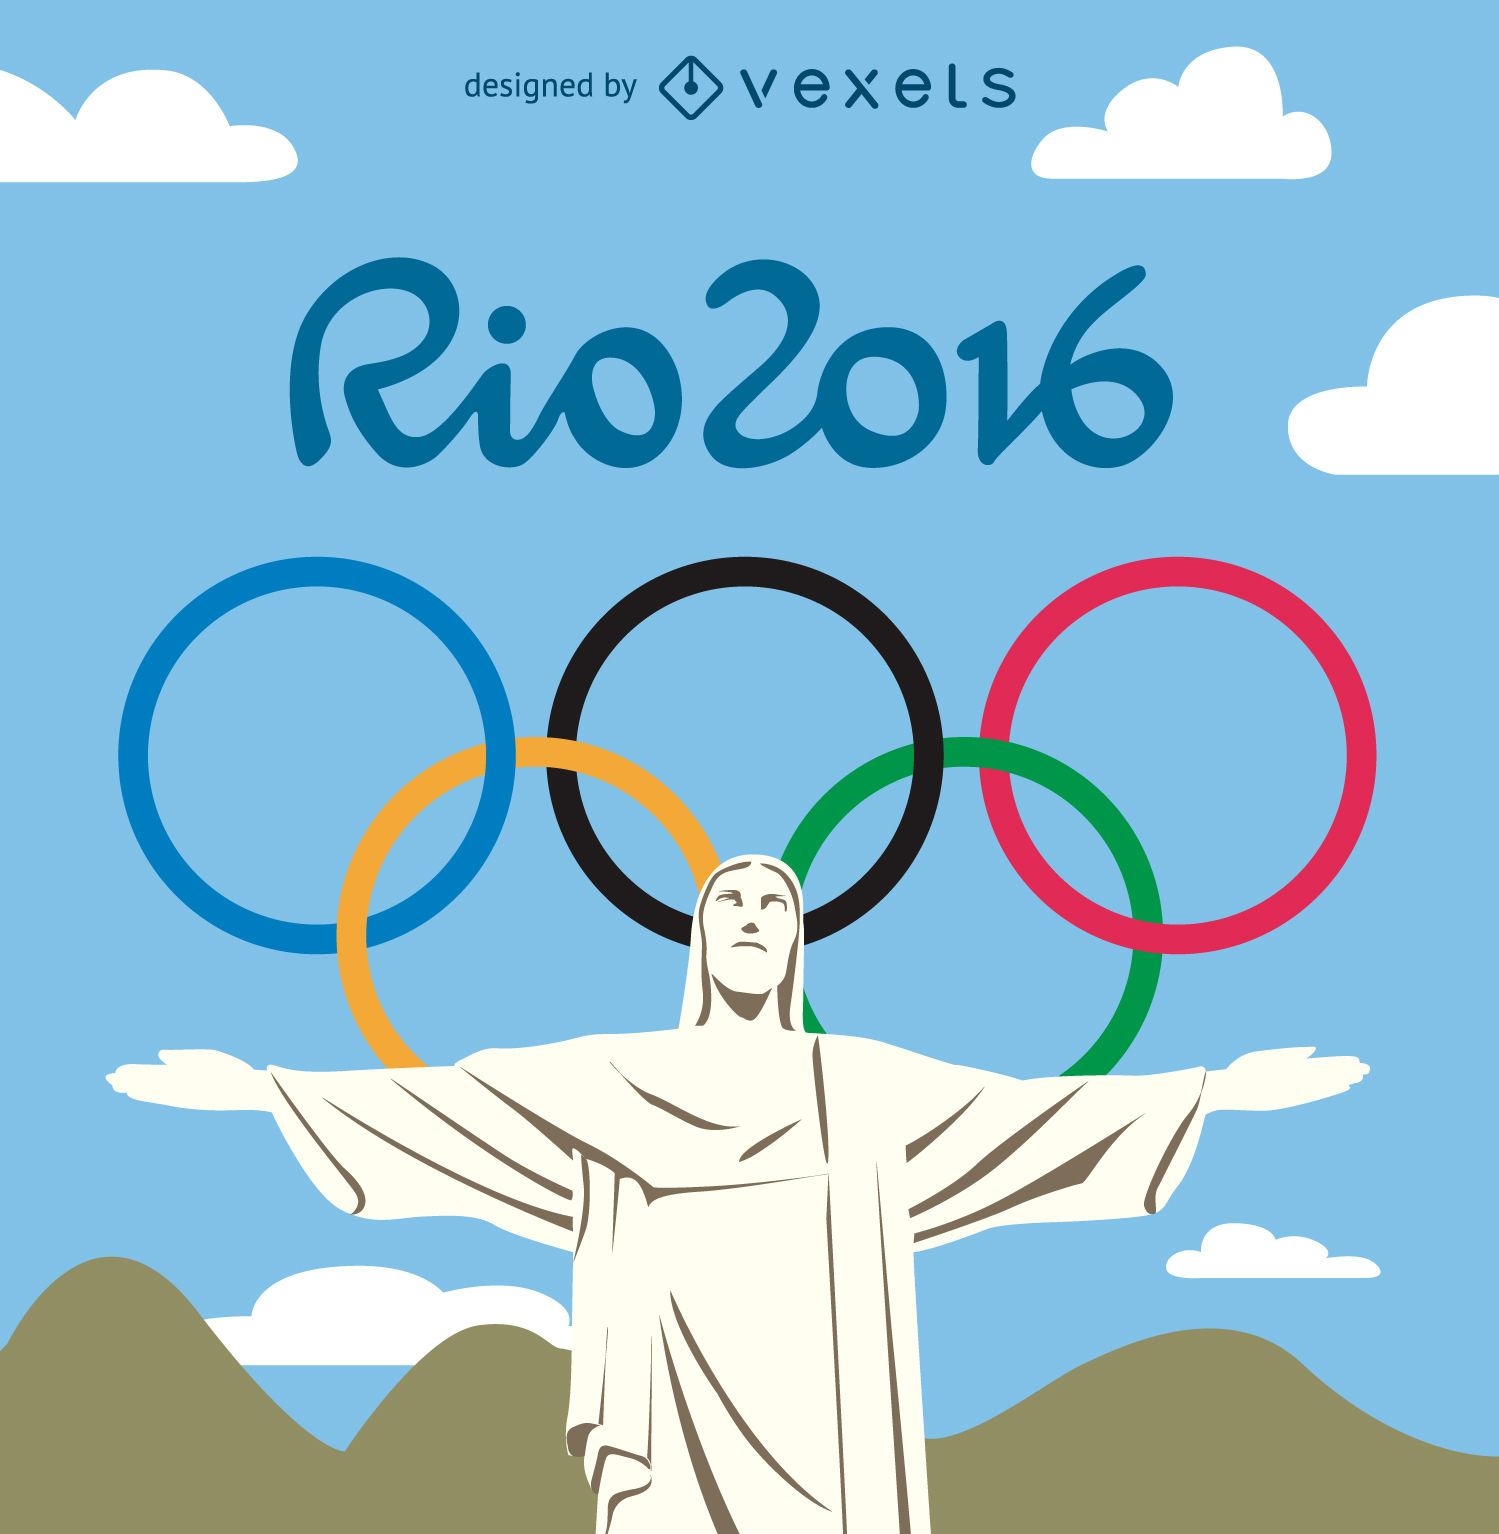 Jogos Olímpicos Rio 2016 - Cristo Redentor